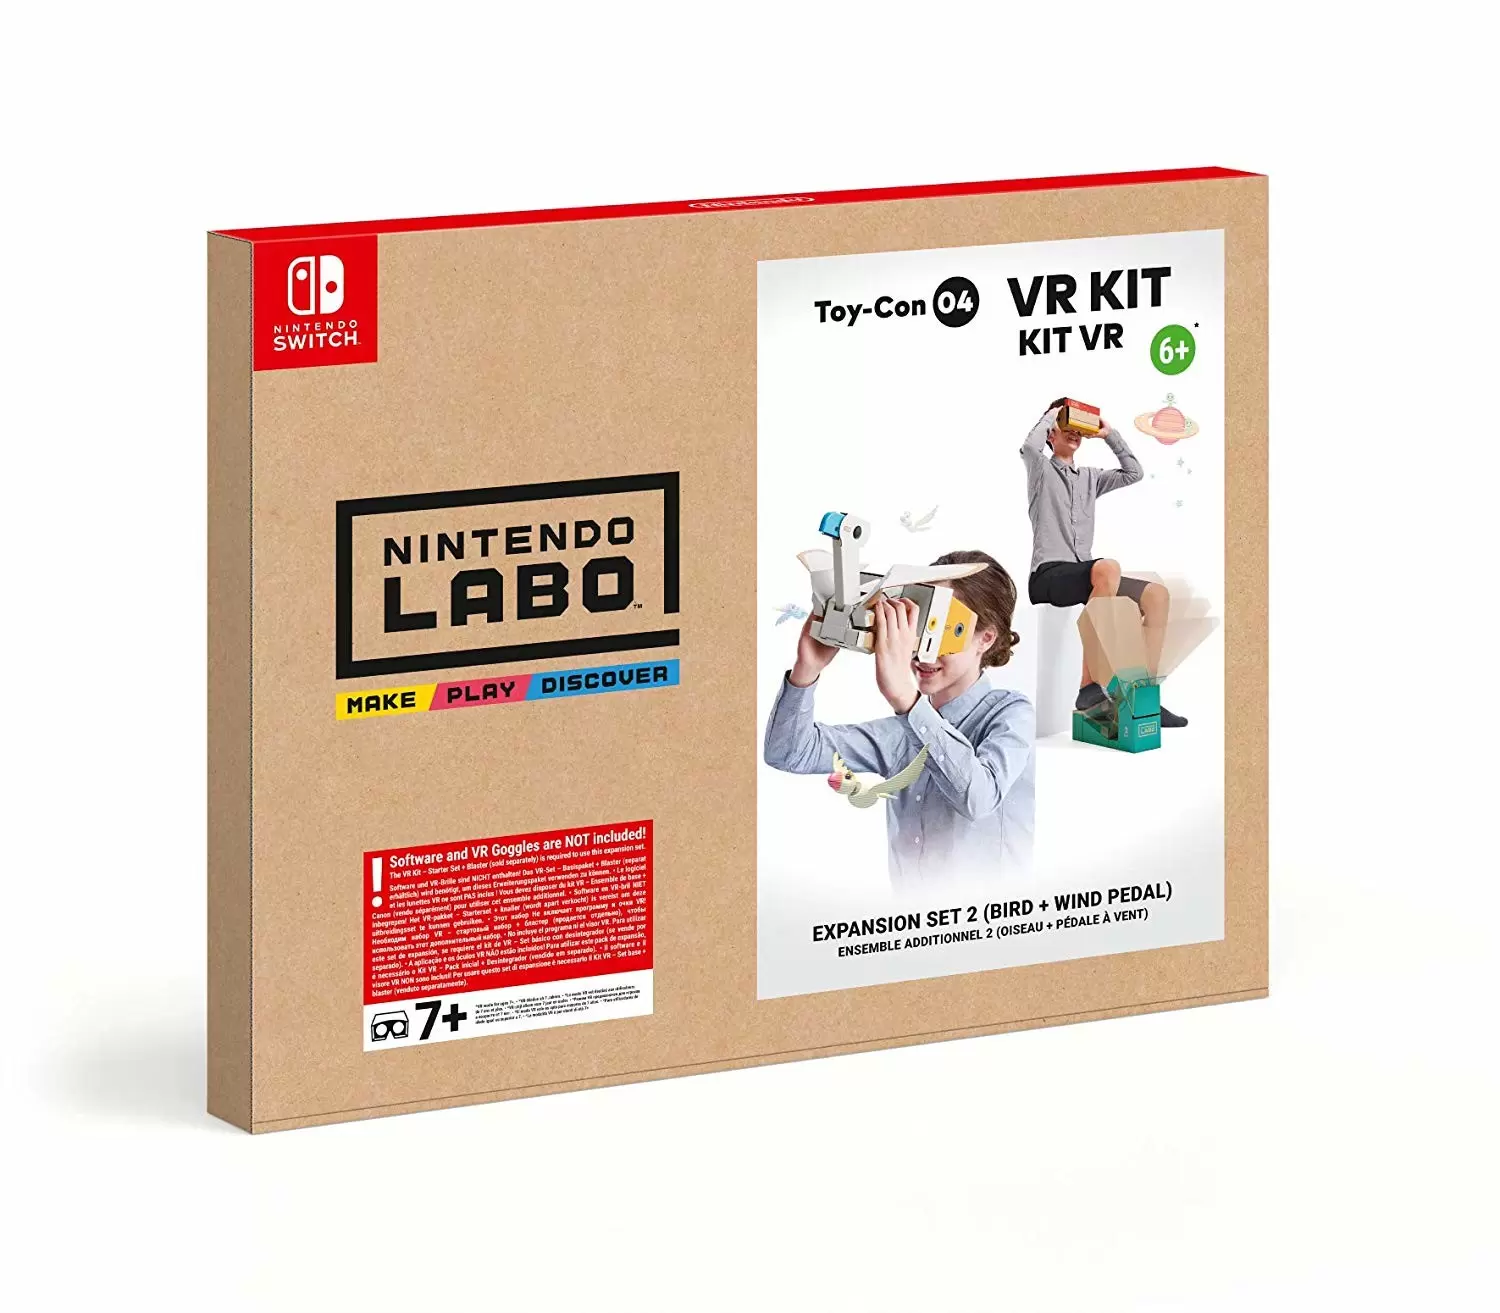 Matériel Nintendo Switch - Toy-Con 04 : Kit VR - 2eme set - Nintendo Labo